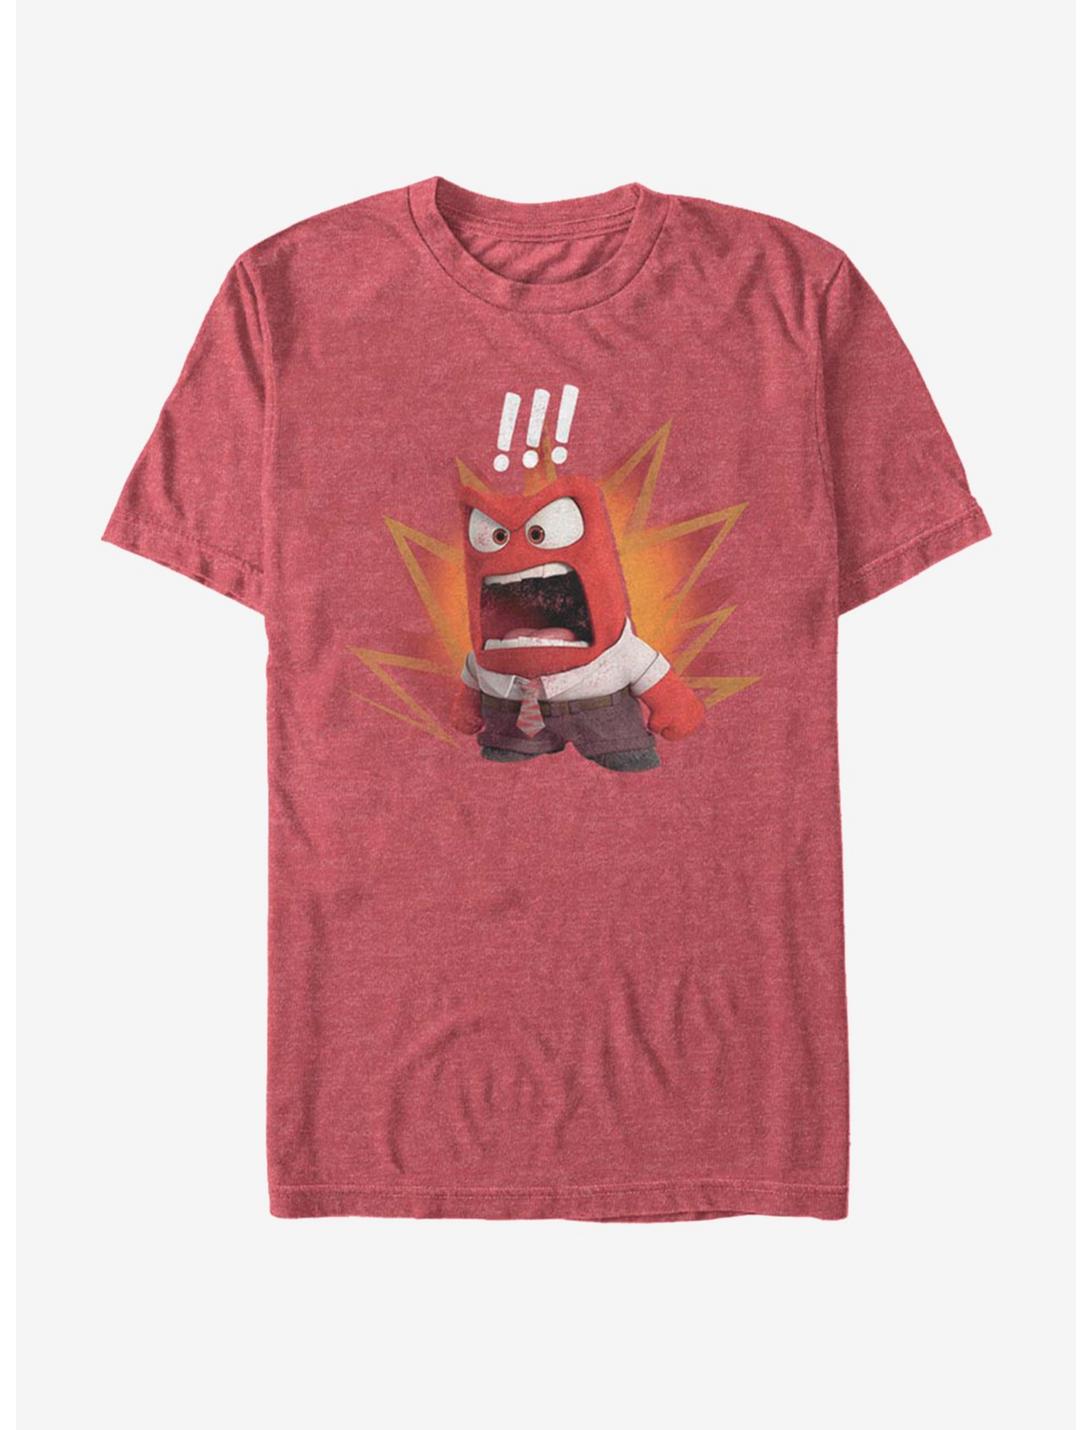 Disney Pixar Inside Out Curse Word T-Shirt, RED HTR, hi-res